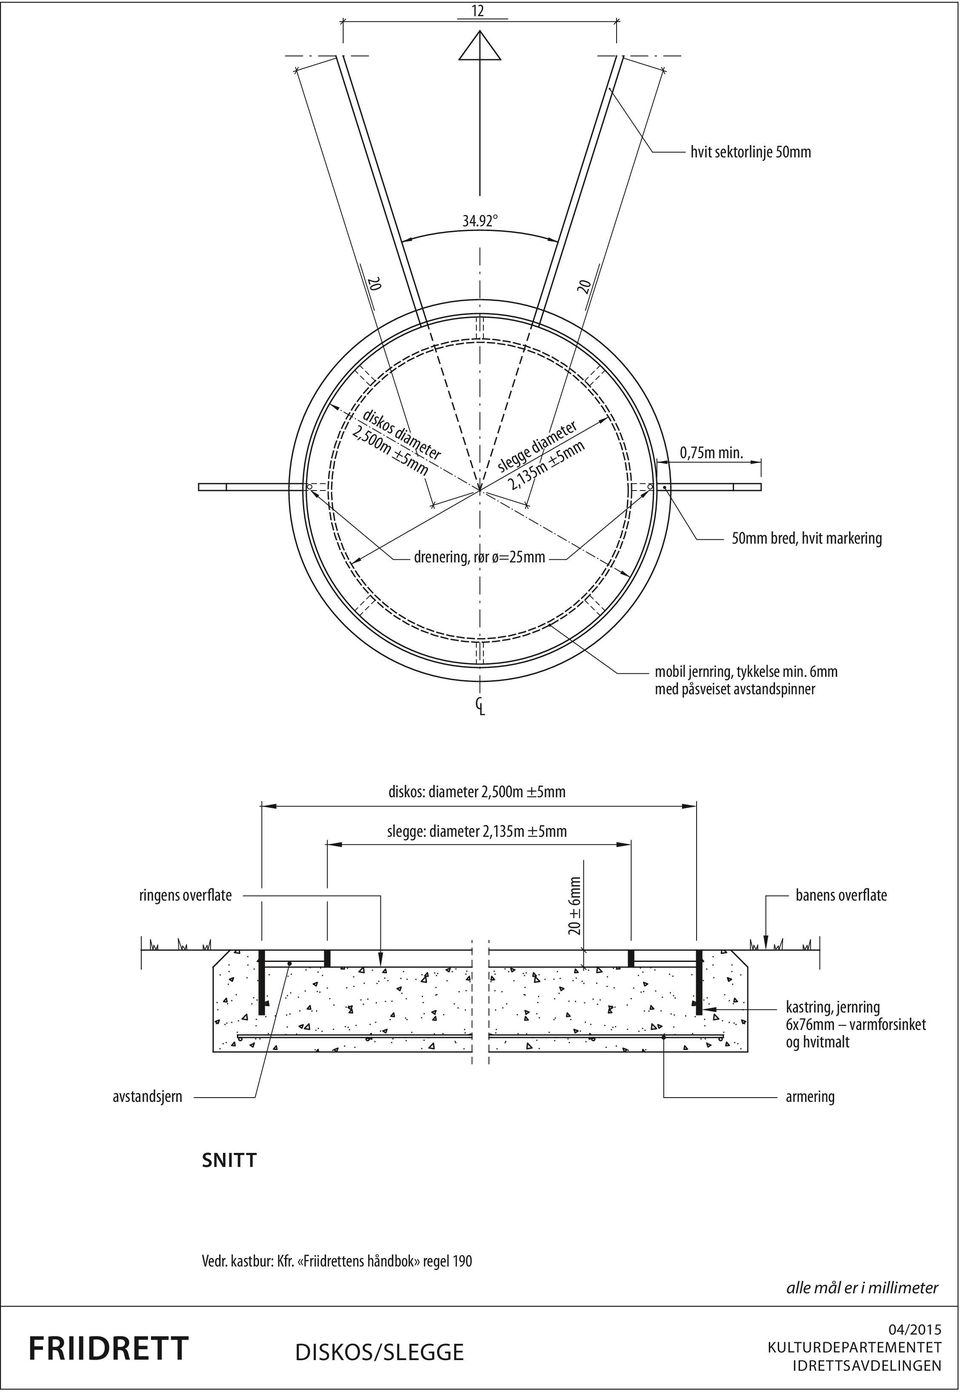 6mm med påsveiset avstandspinner diskos: diameter 2,500m ±5mm slegge: diameter 2,135m ±5mm ringens overflate 20 ± 6mm banens